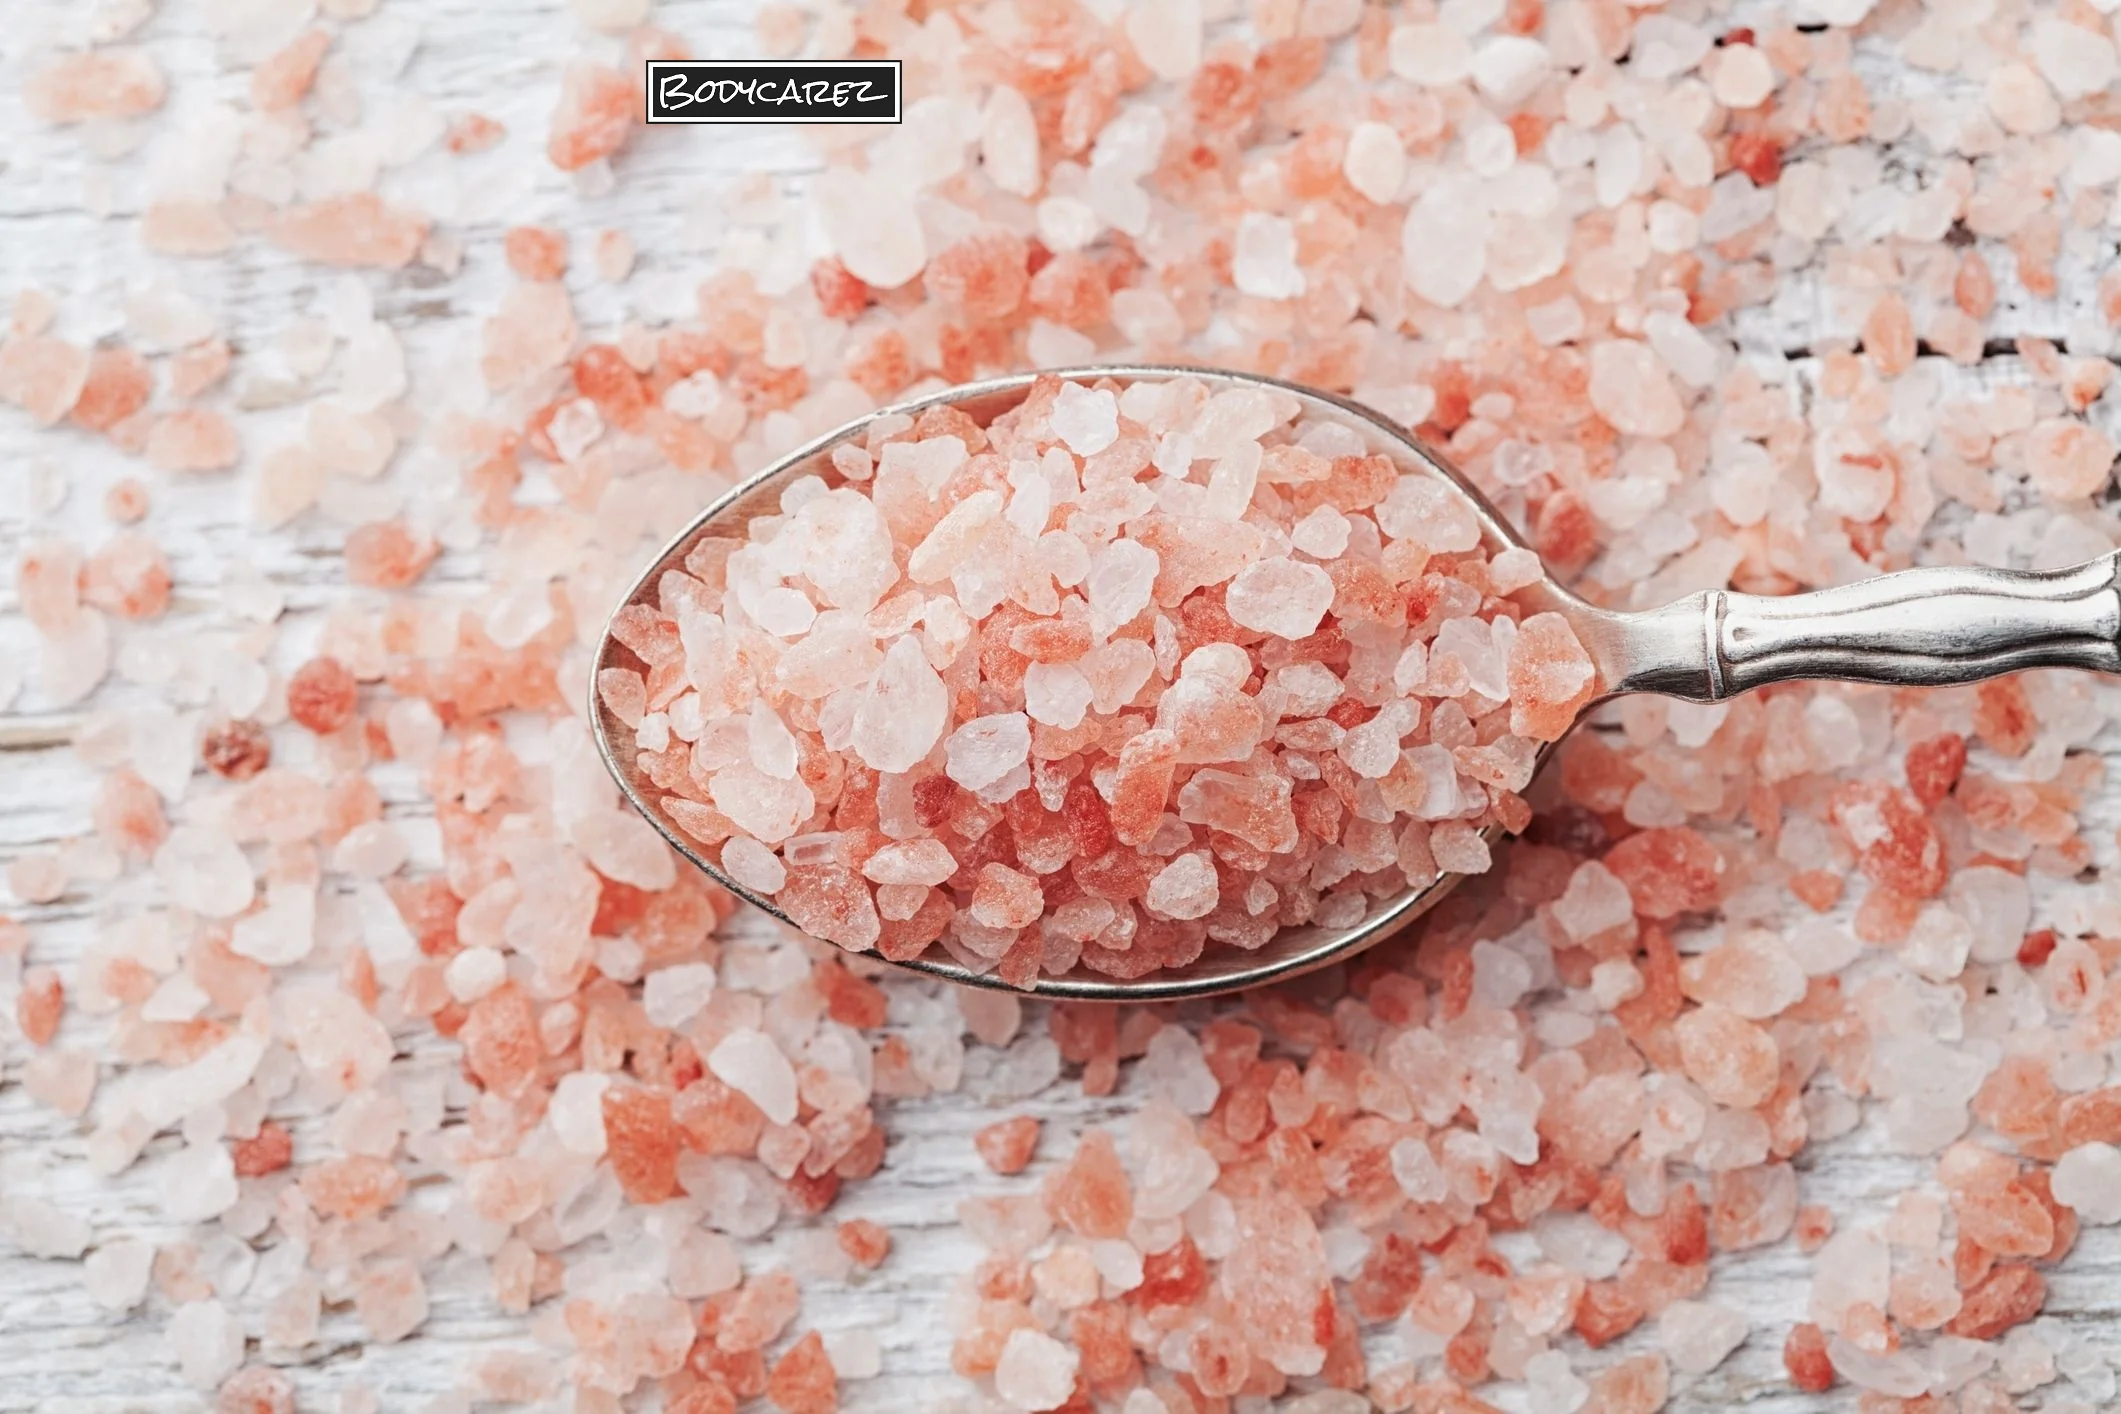 Himalayan Salt Scrub Benefits